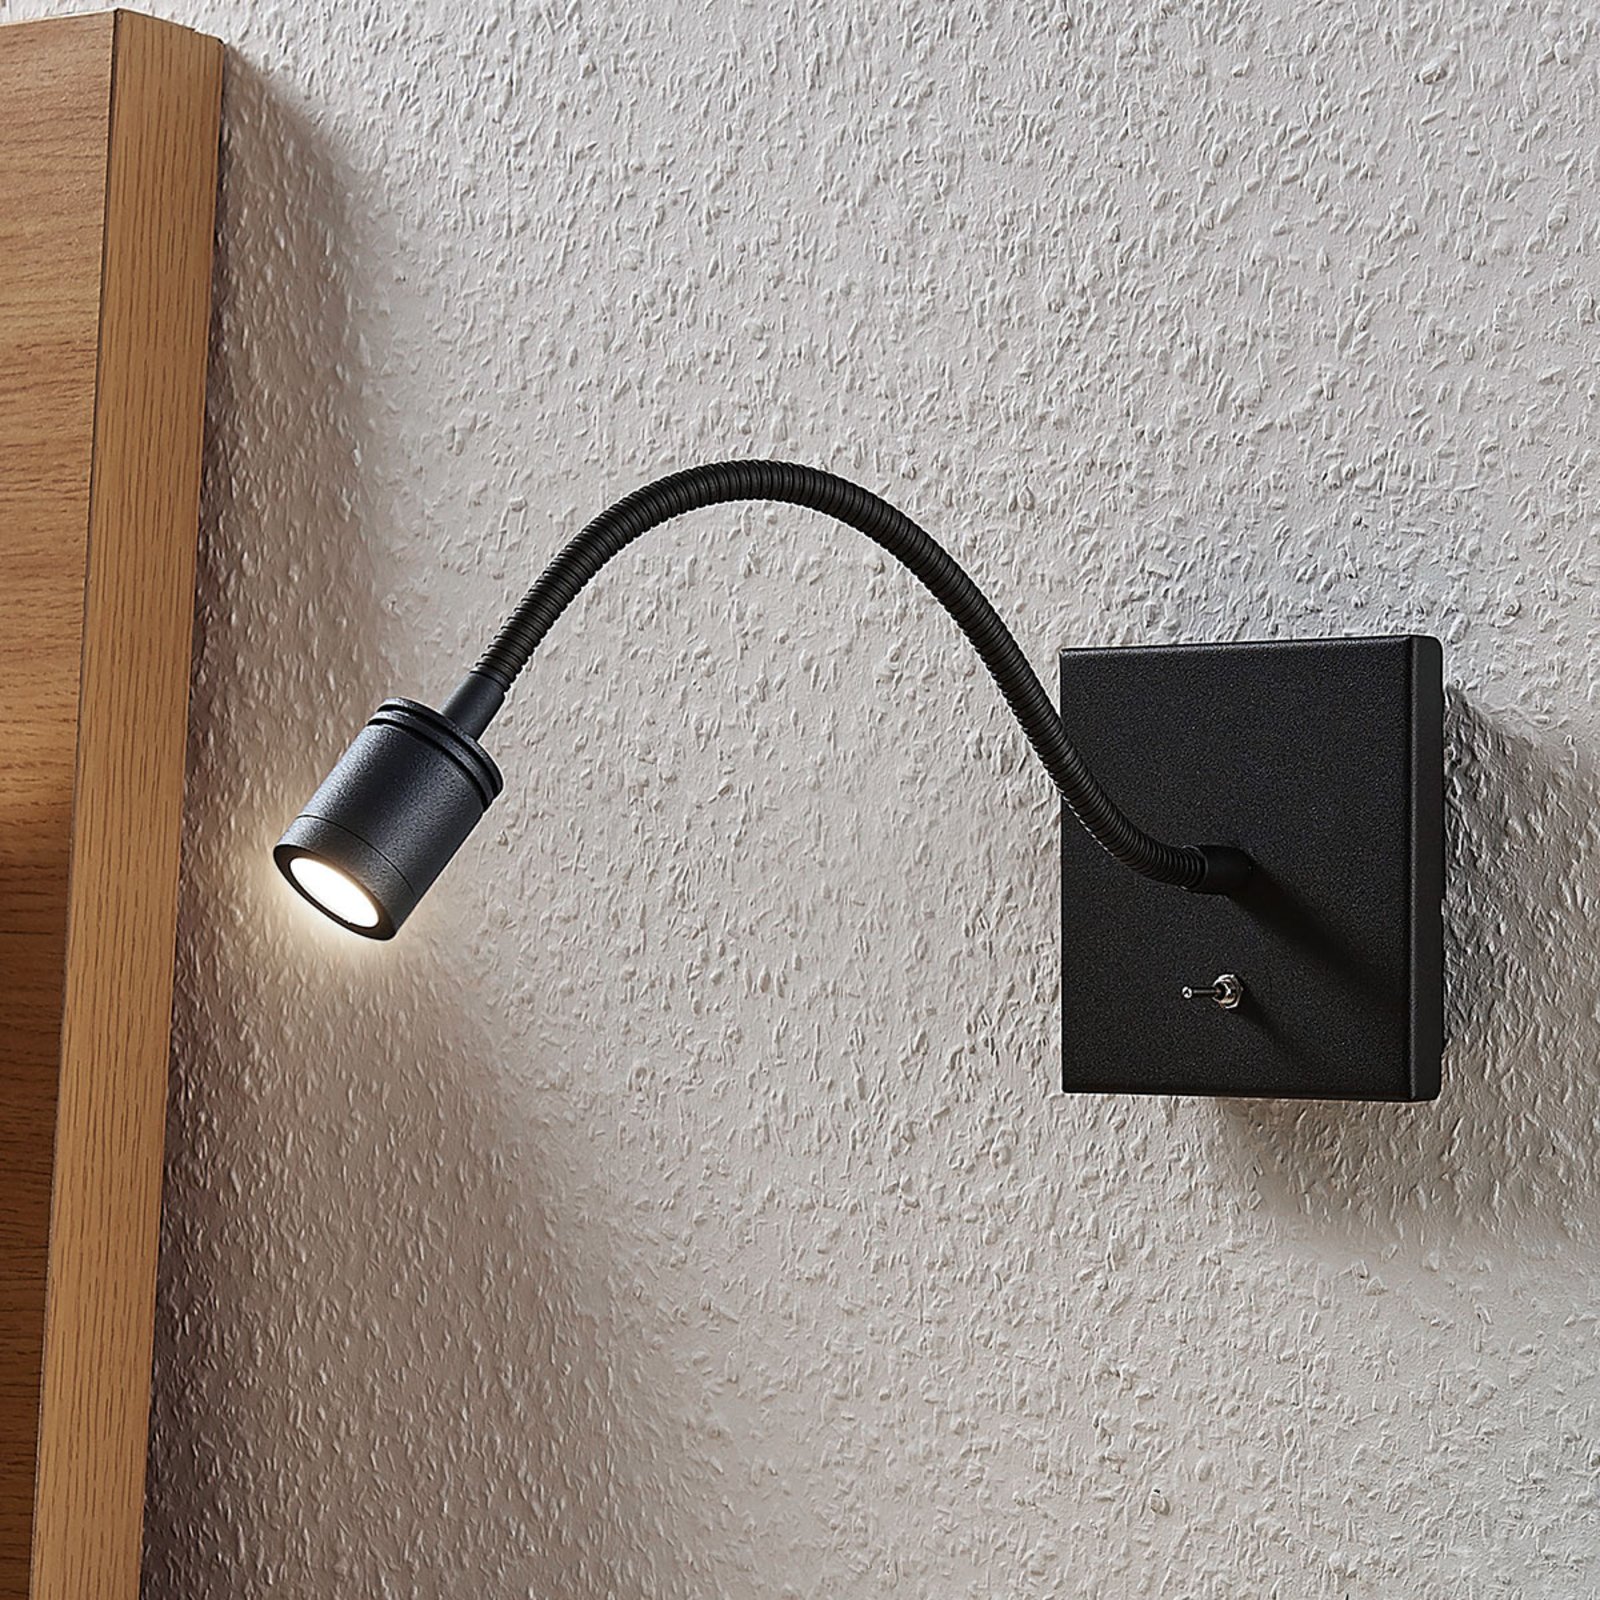 LED-vägg-läslampa Mayar med flexarm, svart